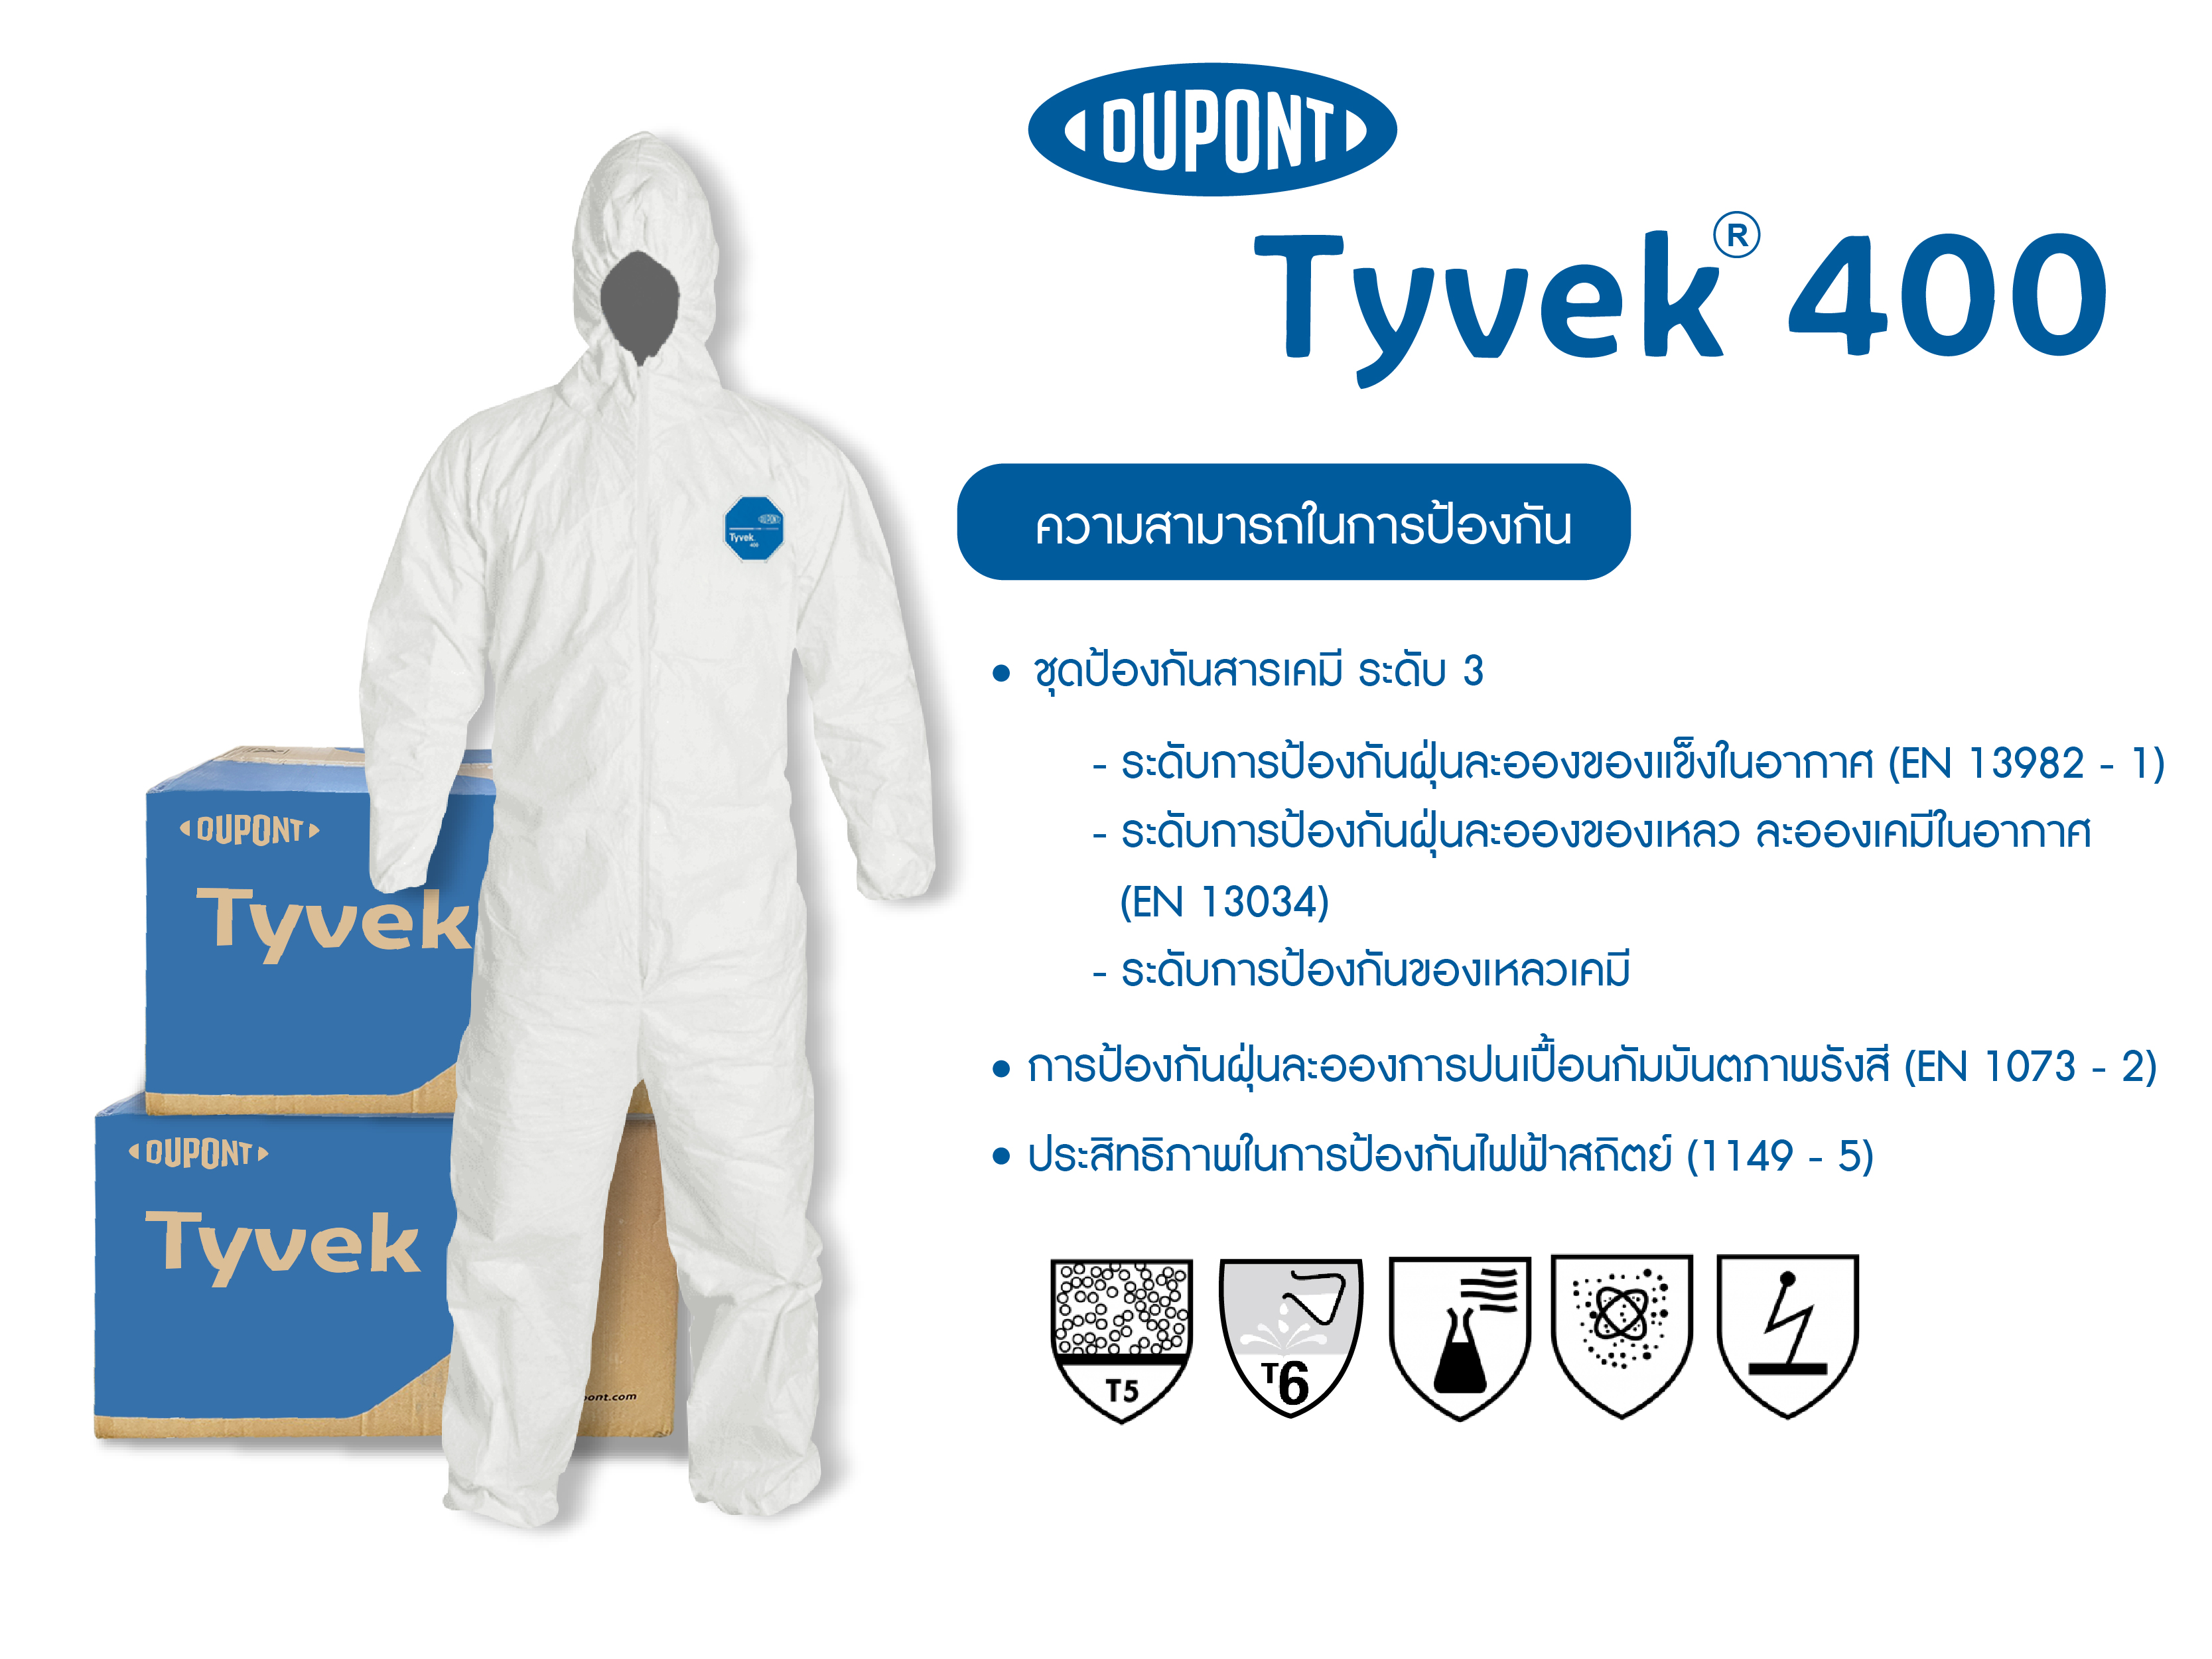 ชุด PPE ป้องกันเชื้อโรค Dupont รุ่น Tyvek 400